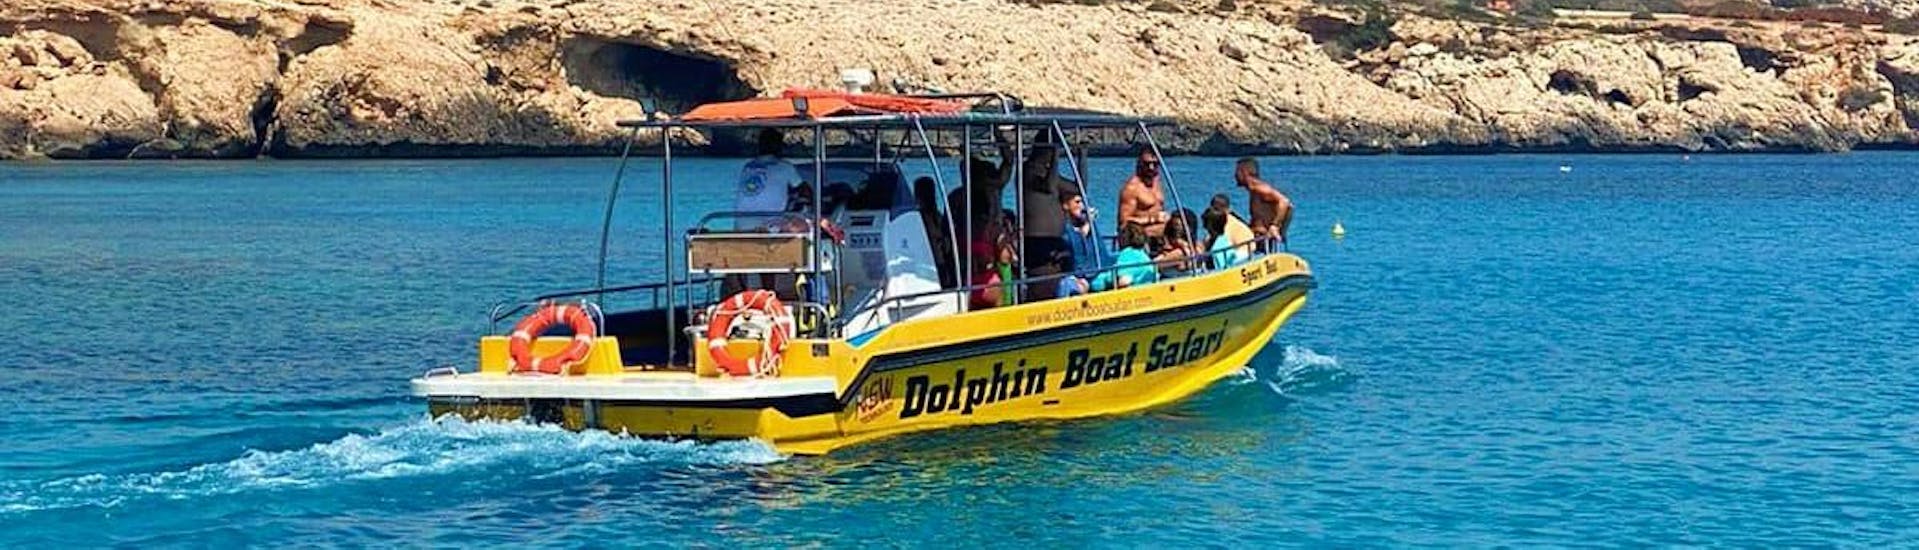 Un barco a motor de Dolphin Boat Safari, navegando por la impresionante costa de Ayia Napa.